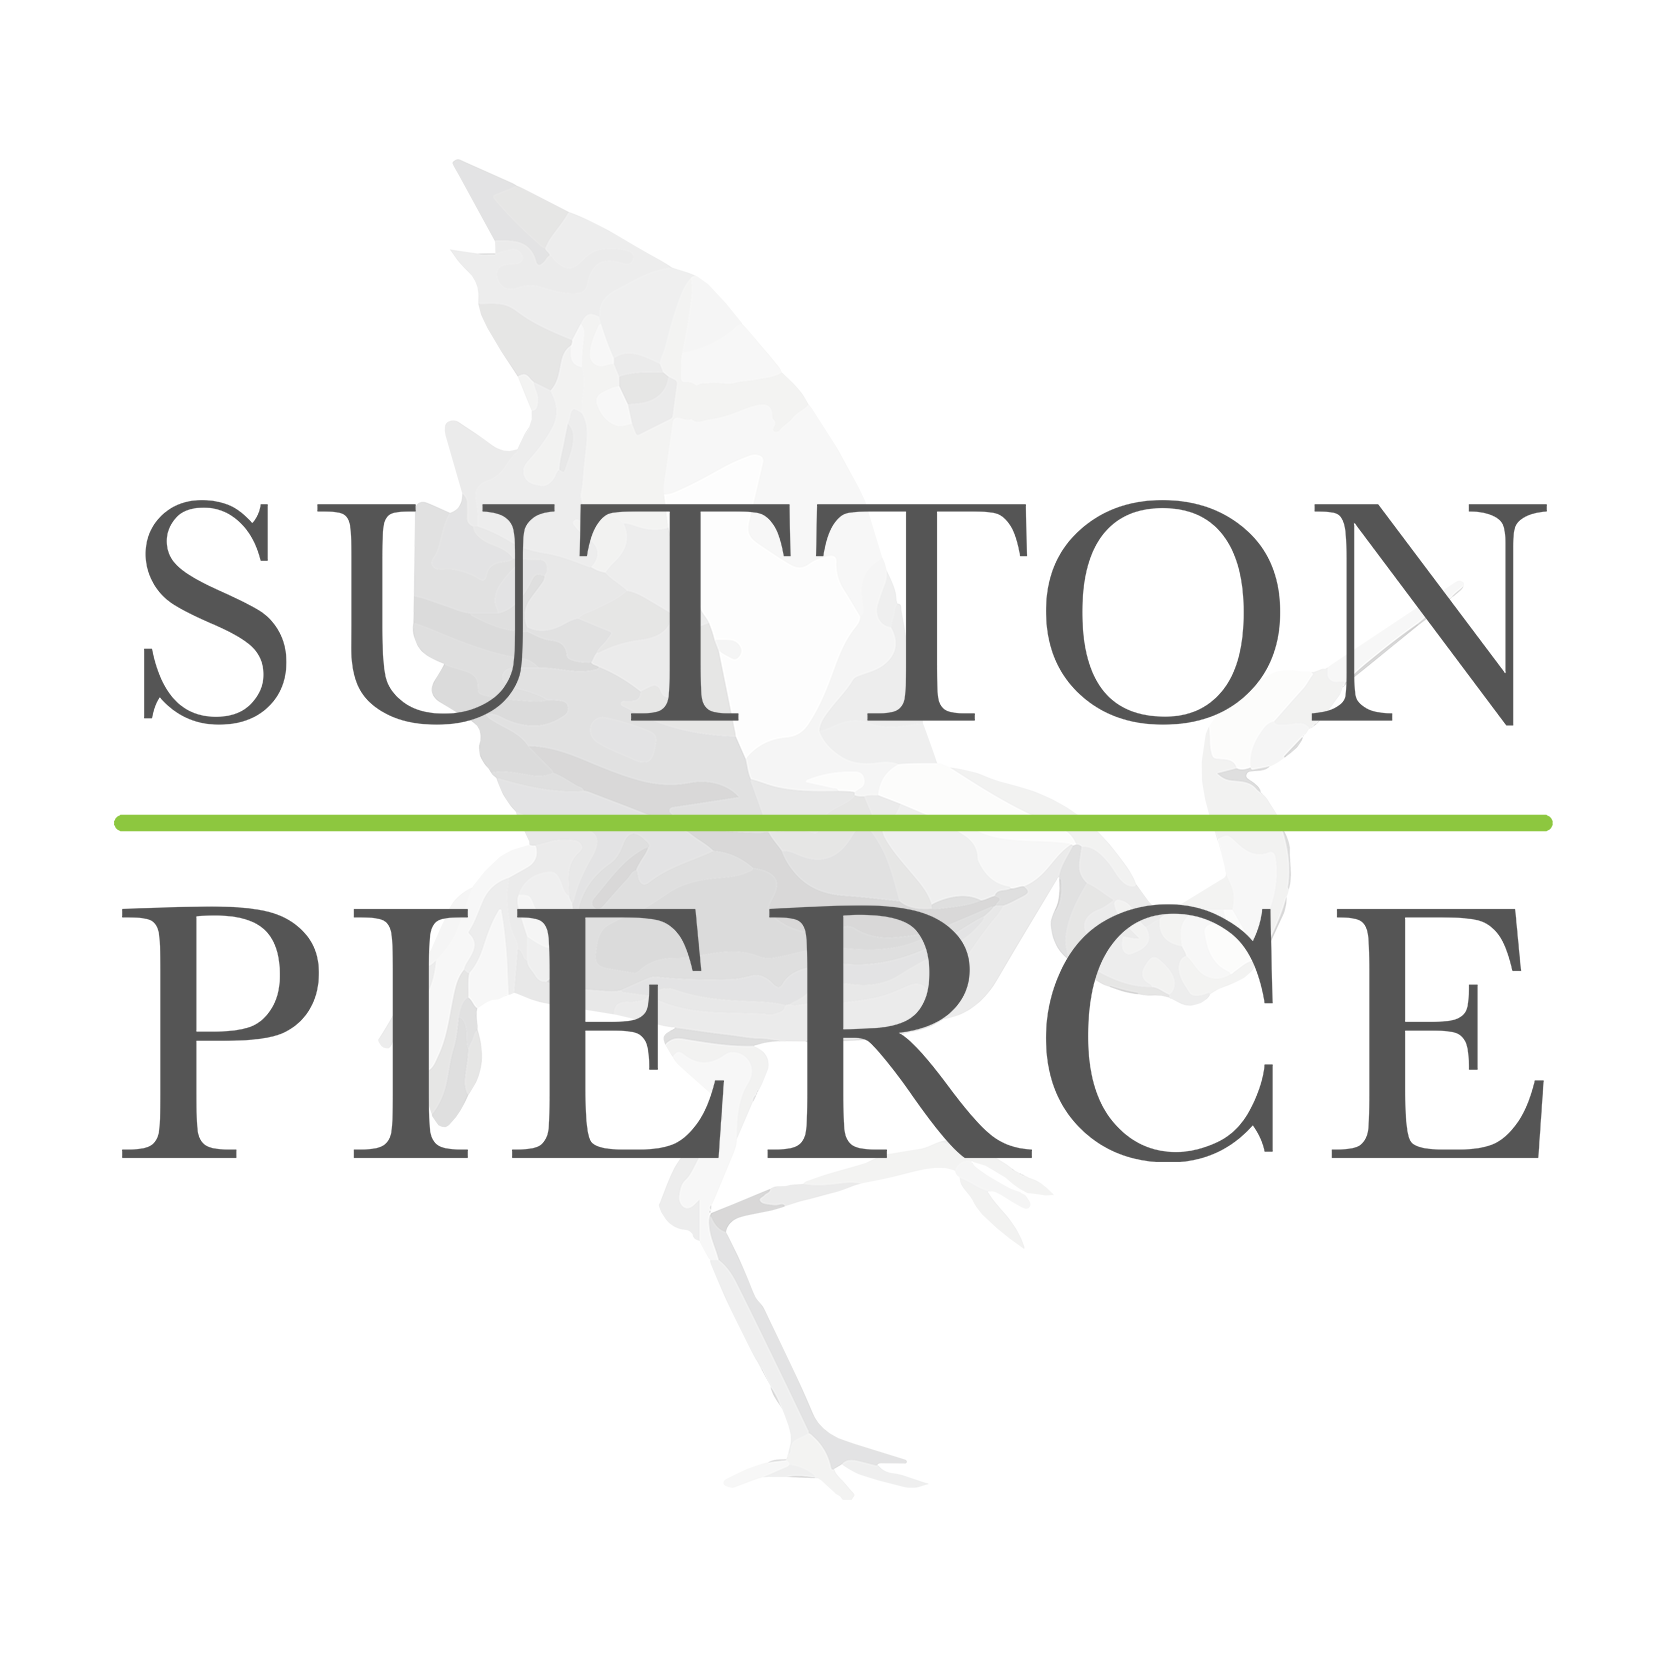 Sutton Pierce